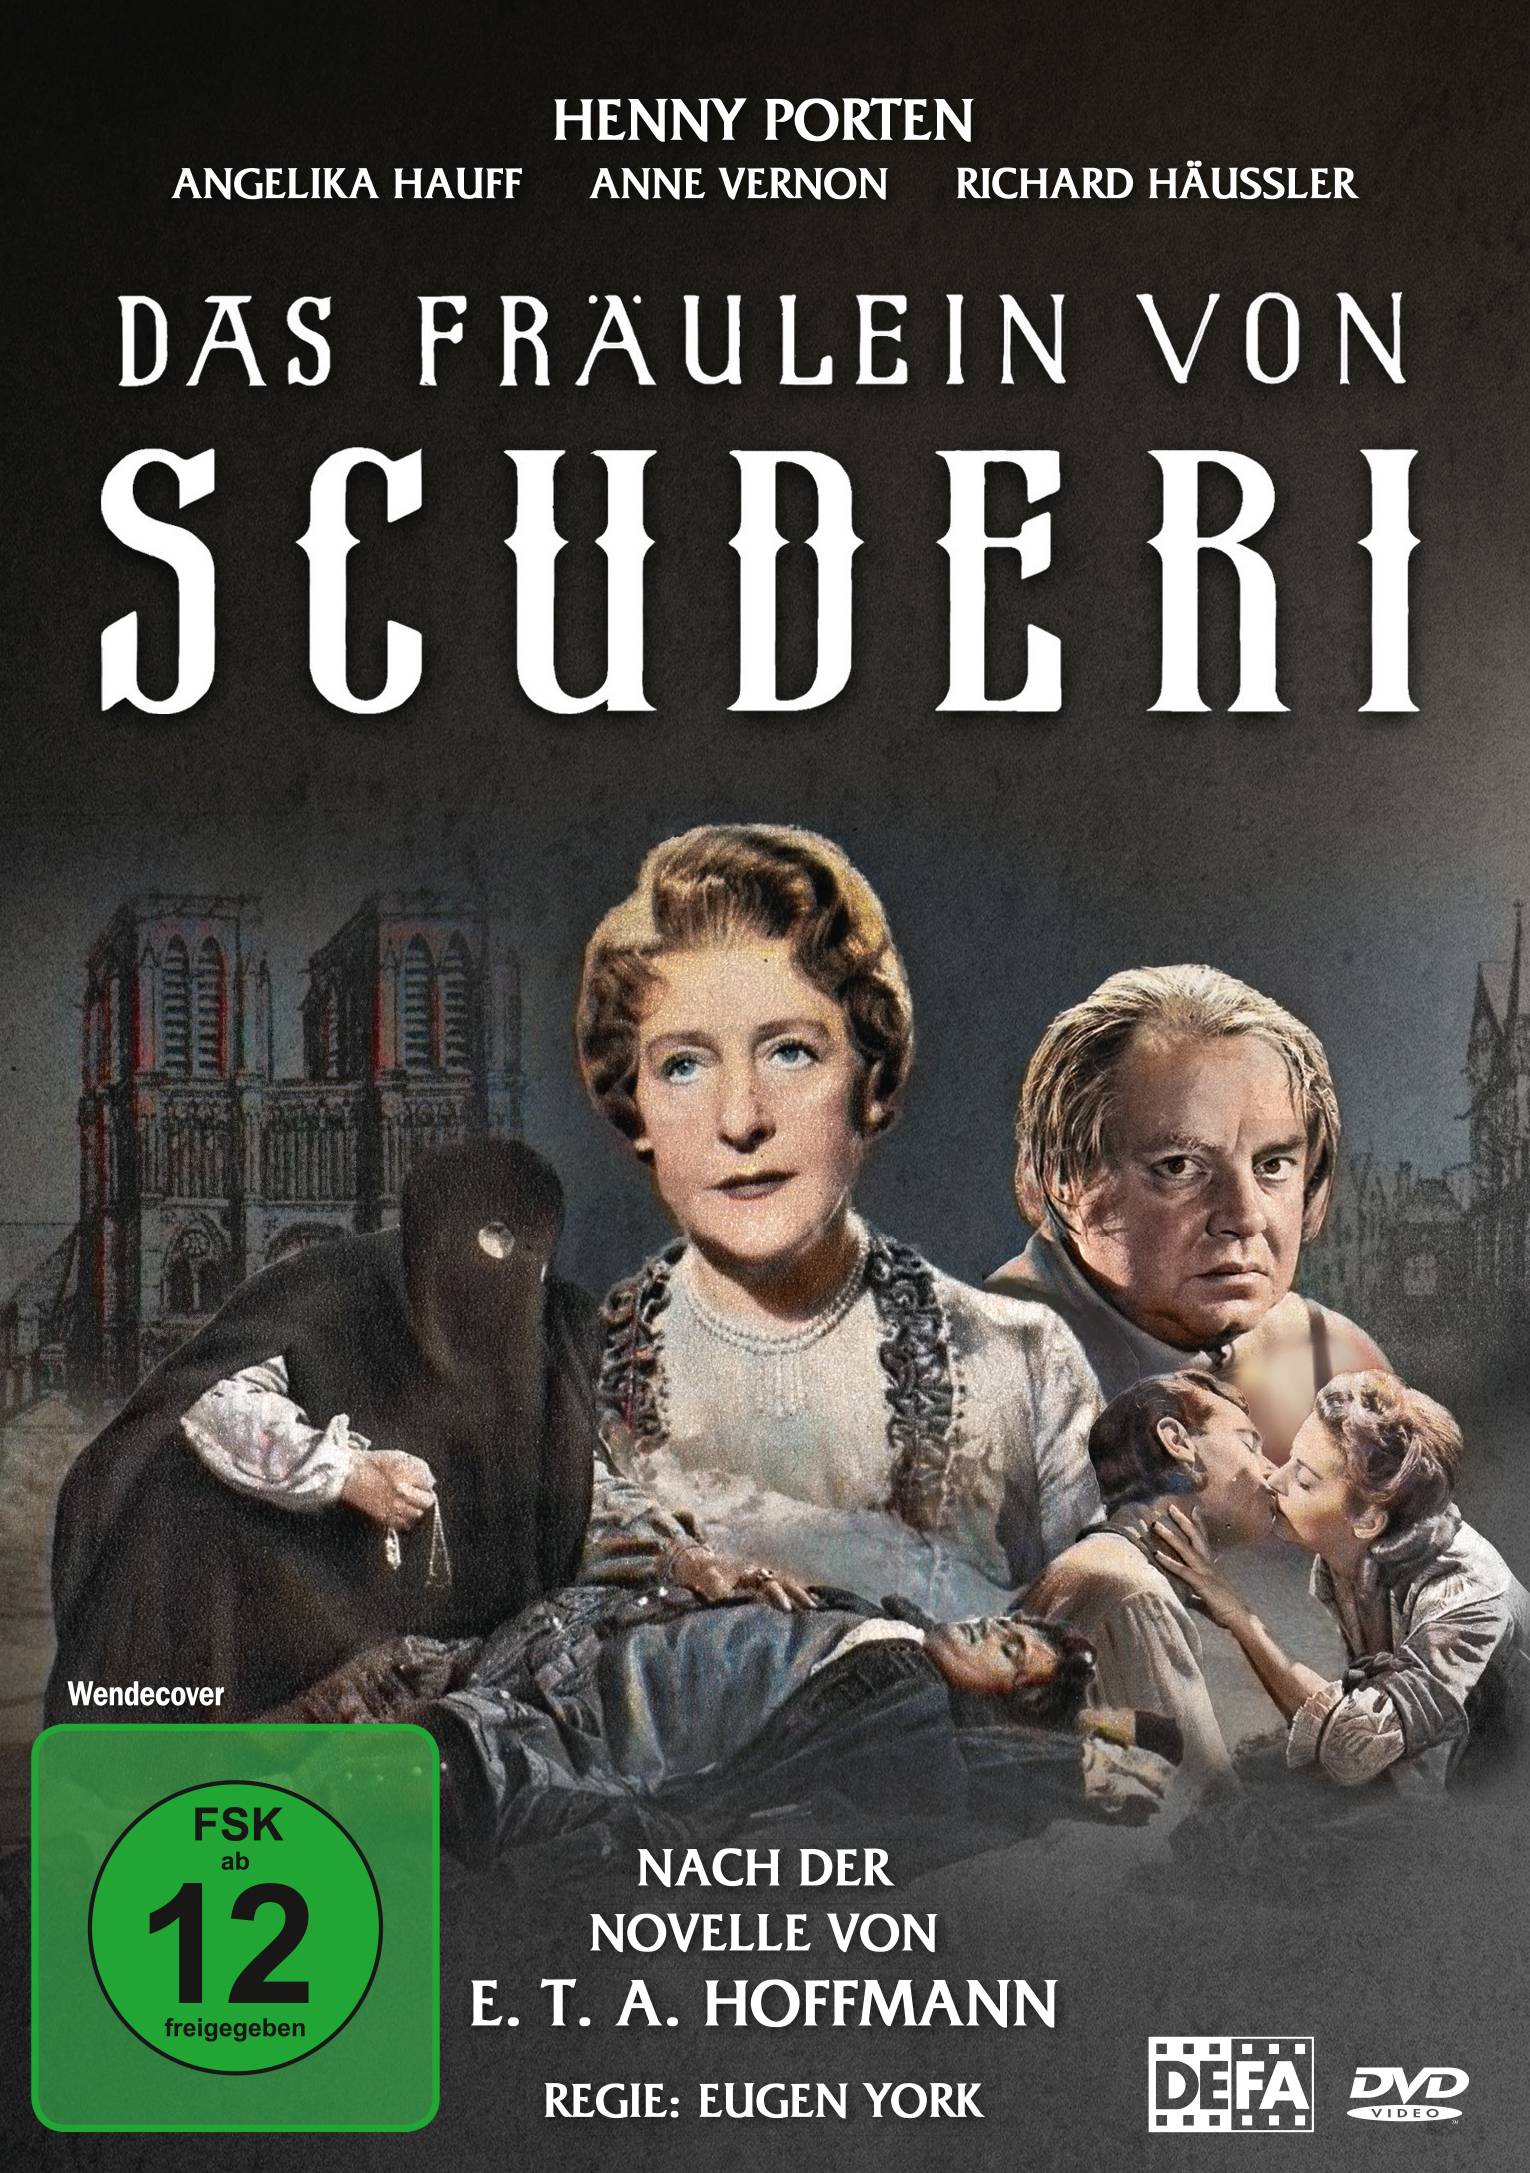 Das Fräulein von Scuderi (E. T. A. Hoffmann) (Neuauflage)